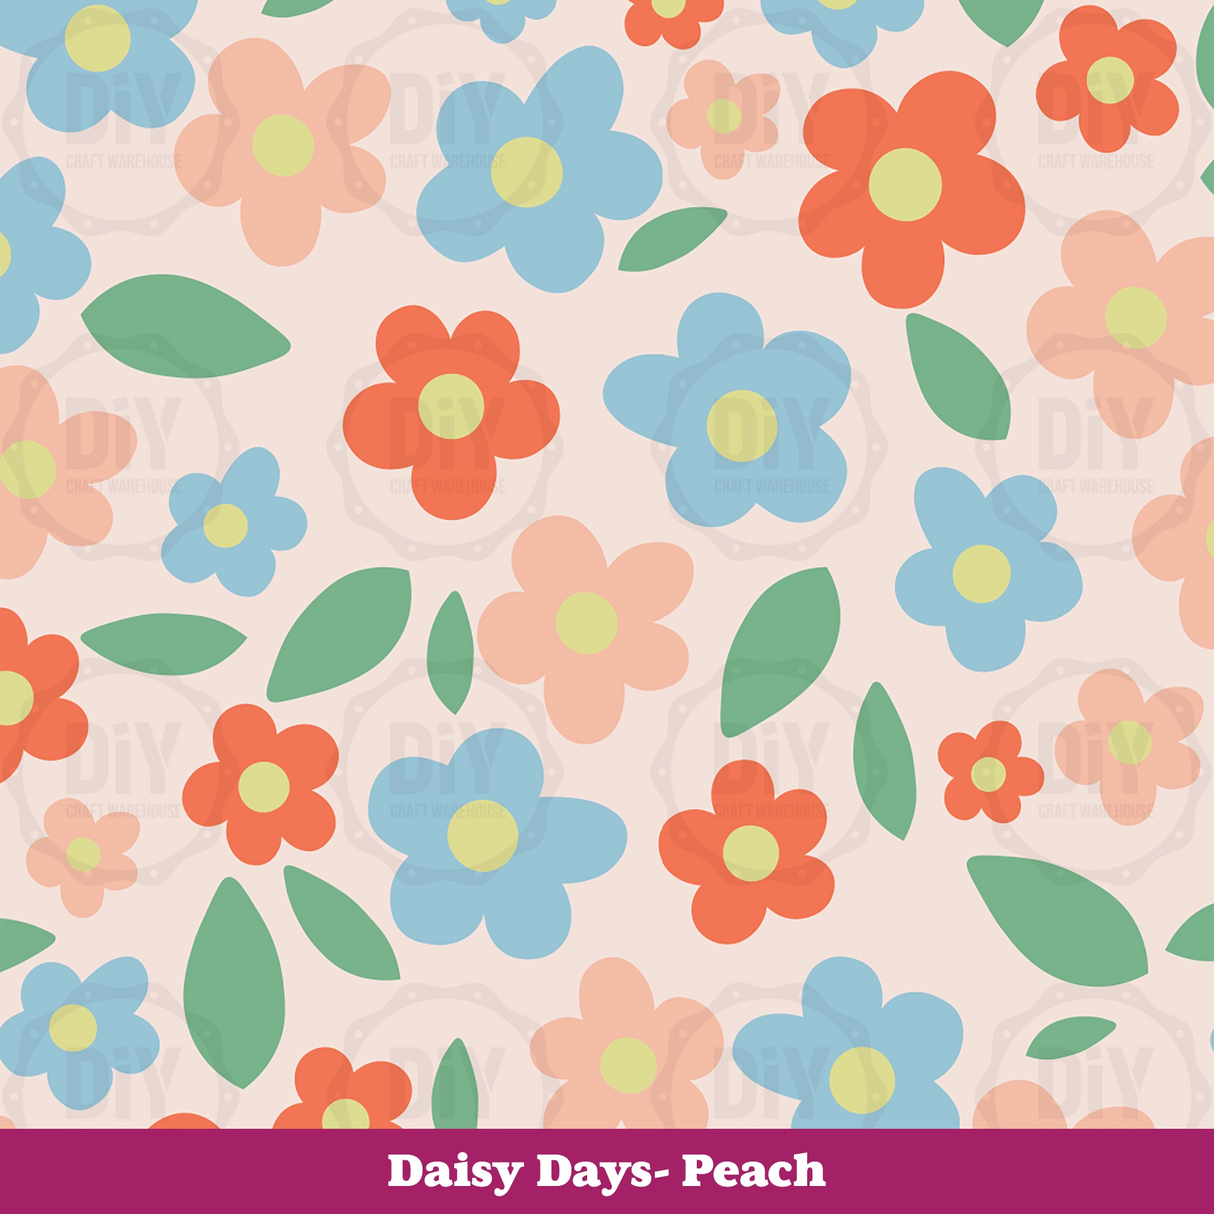 Daisy Days Sublimation Transfer - Peach